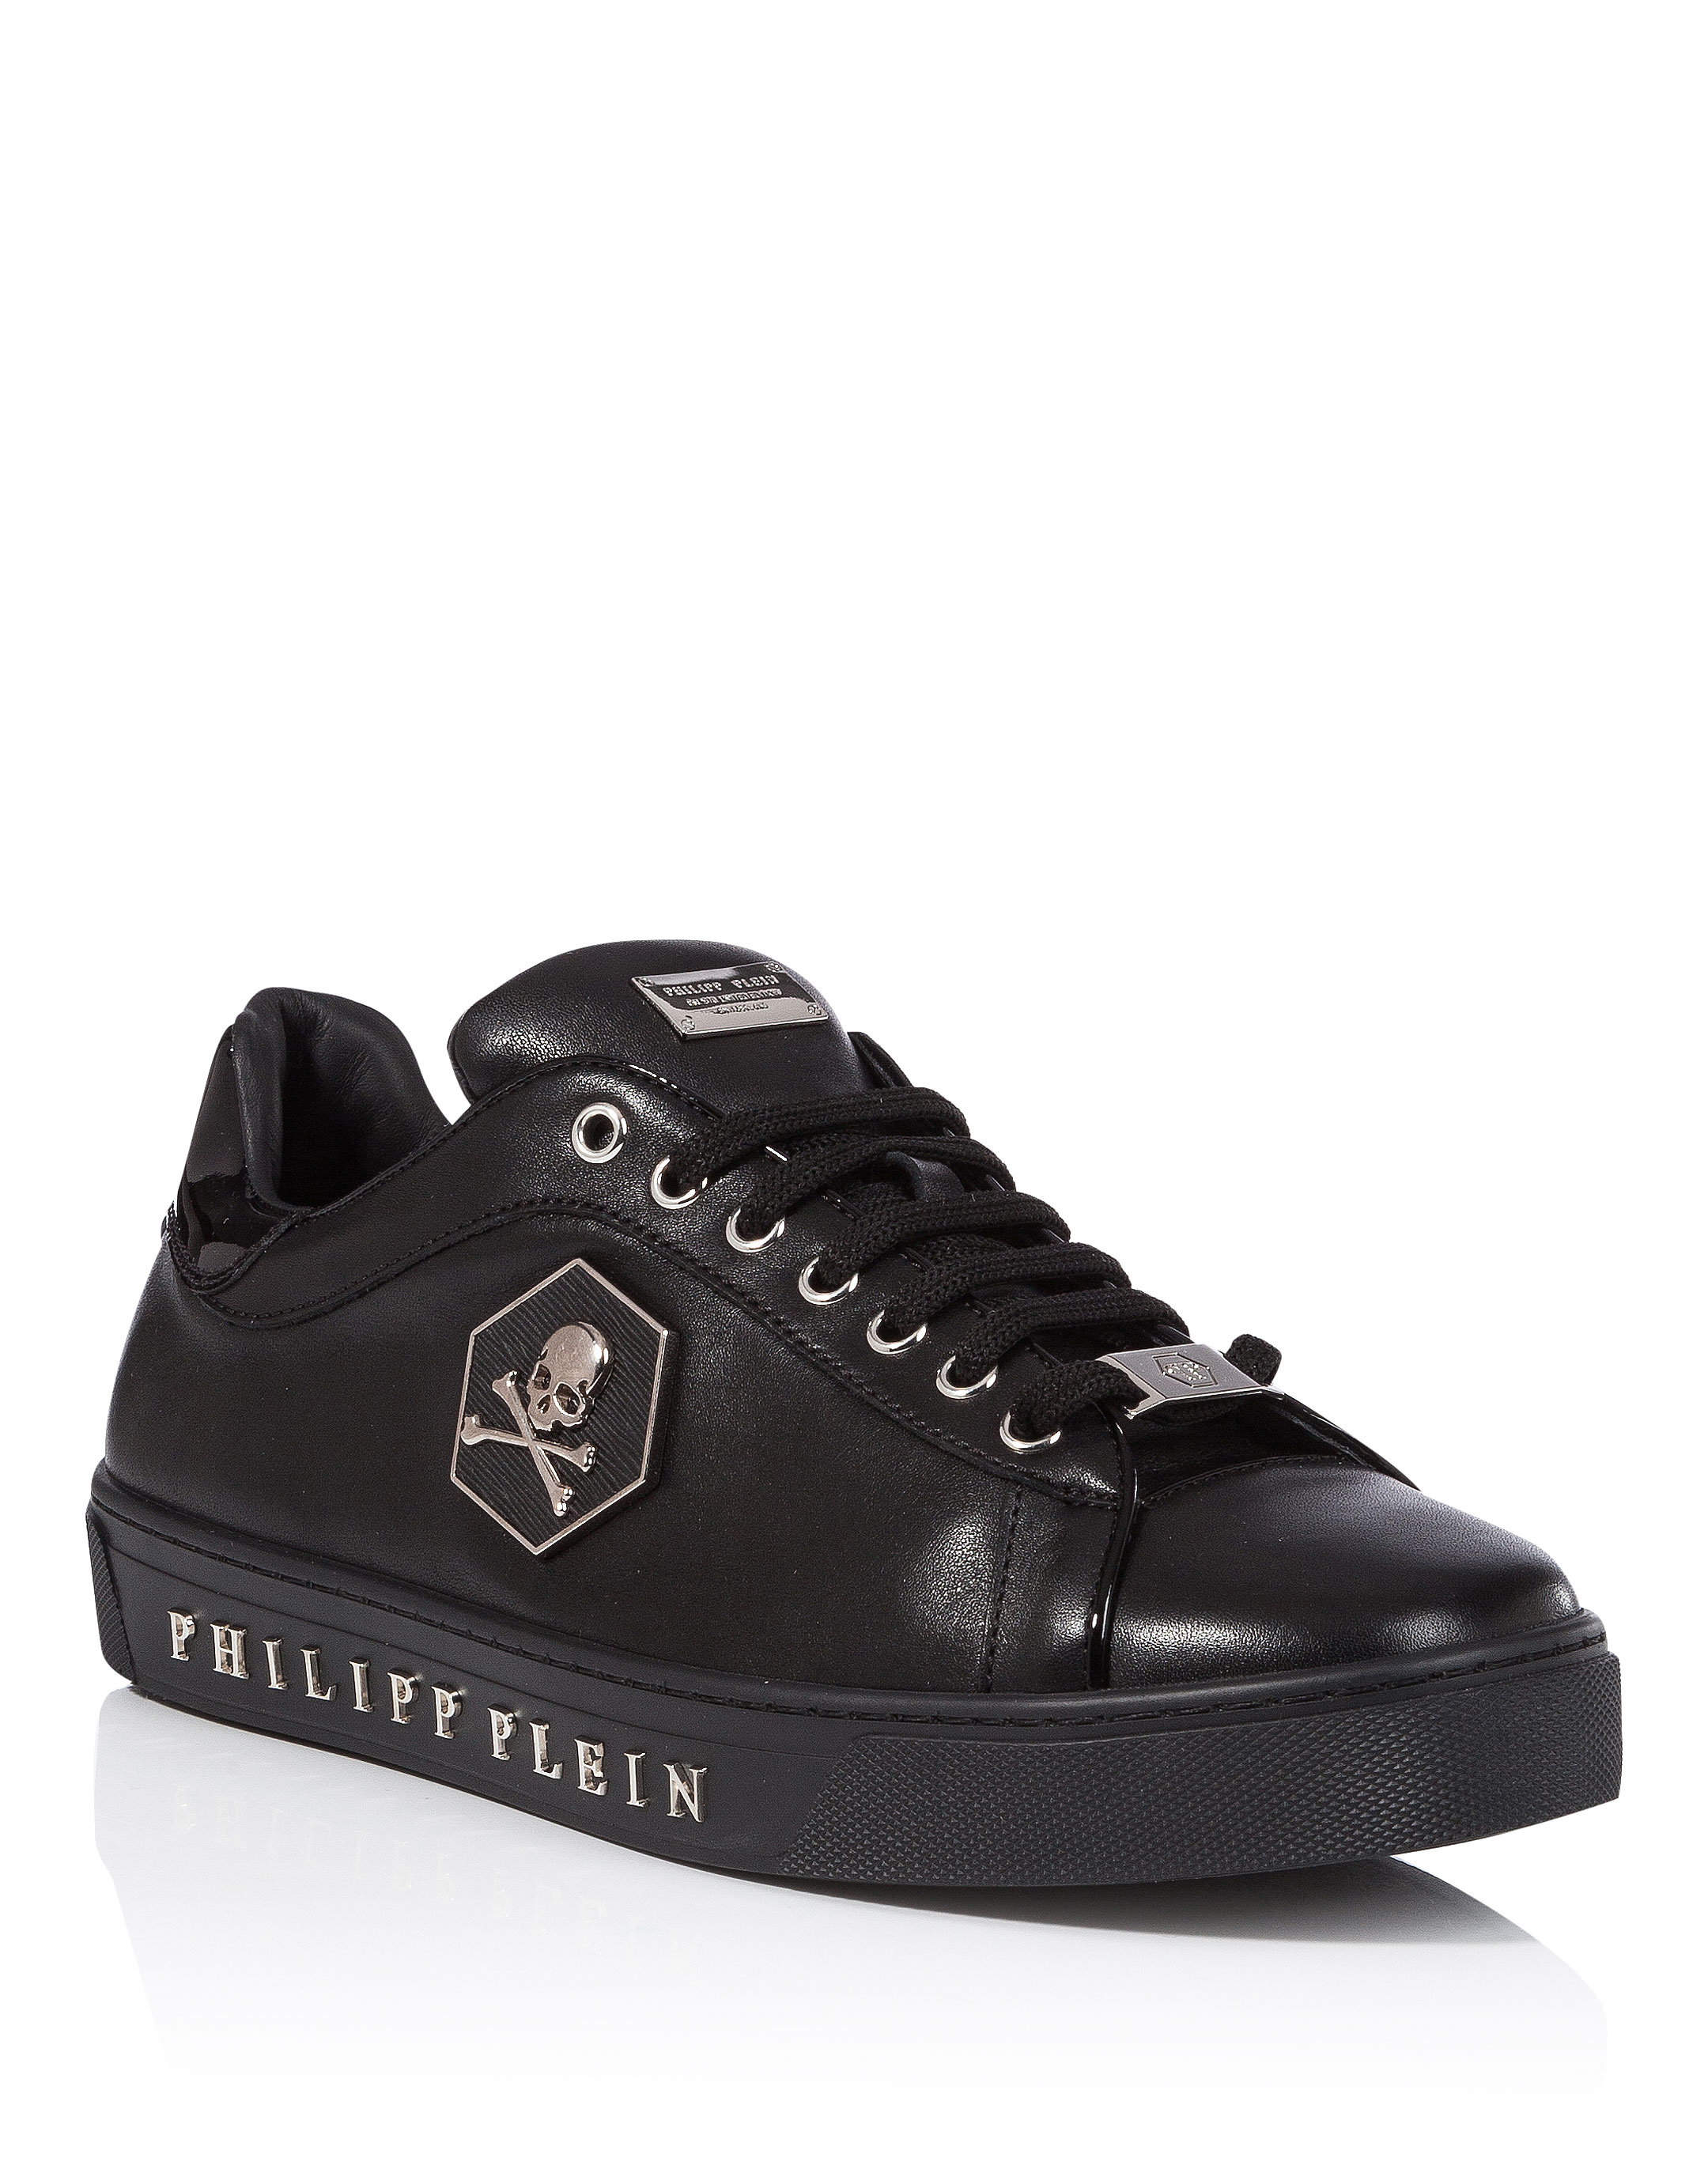 Philipp Plein Sneakers Sale Deals, SAVE 59% - aveclumiere.com